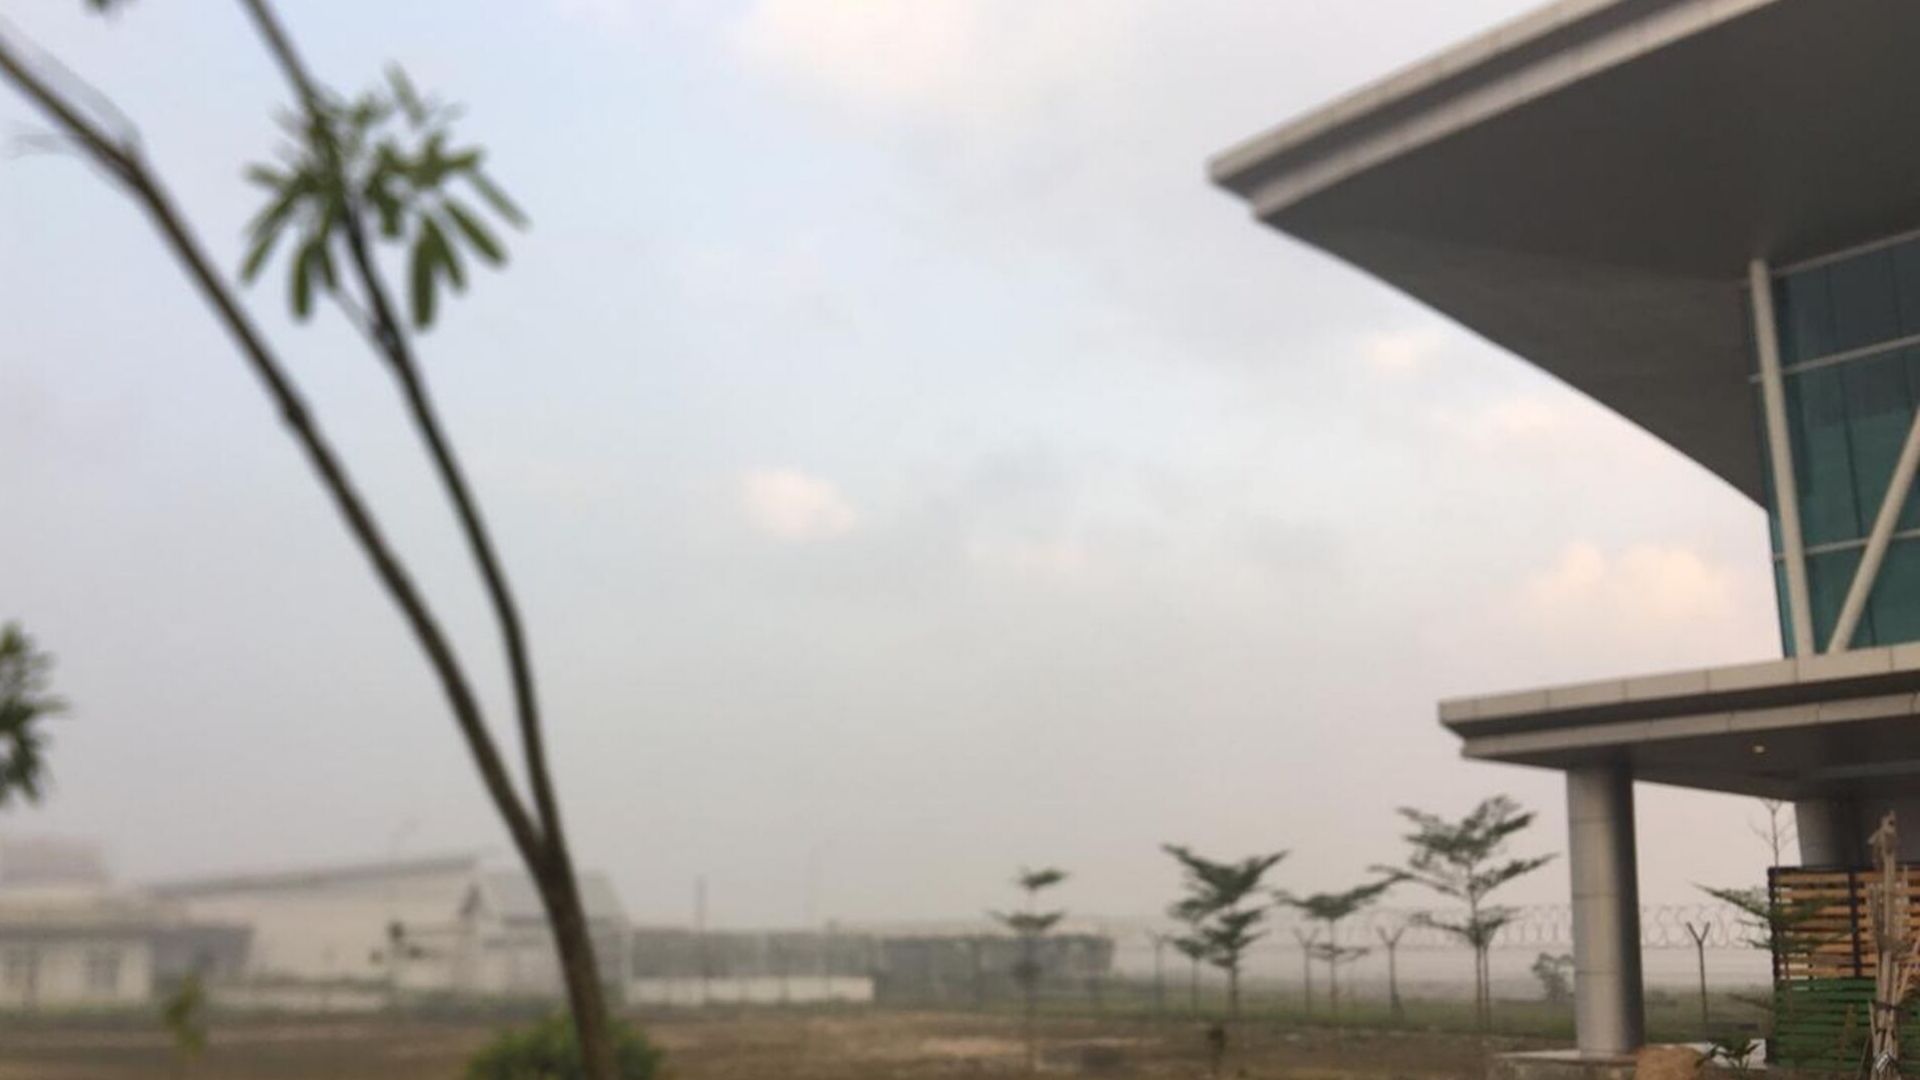 Bandar Udara Internasional Aji Pangeran Tumenggung Pranoto atau sering disingkat Bandar Udara APT Pranoto, di Kota Samarinda, Kalimantan Timur, Senin (23/9/2019) pagi ini, diselimuti asap lagi. Padahal, selama dua hari sebelumnya, penerbangan sudah berjalan normal. 